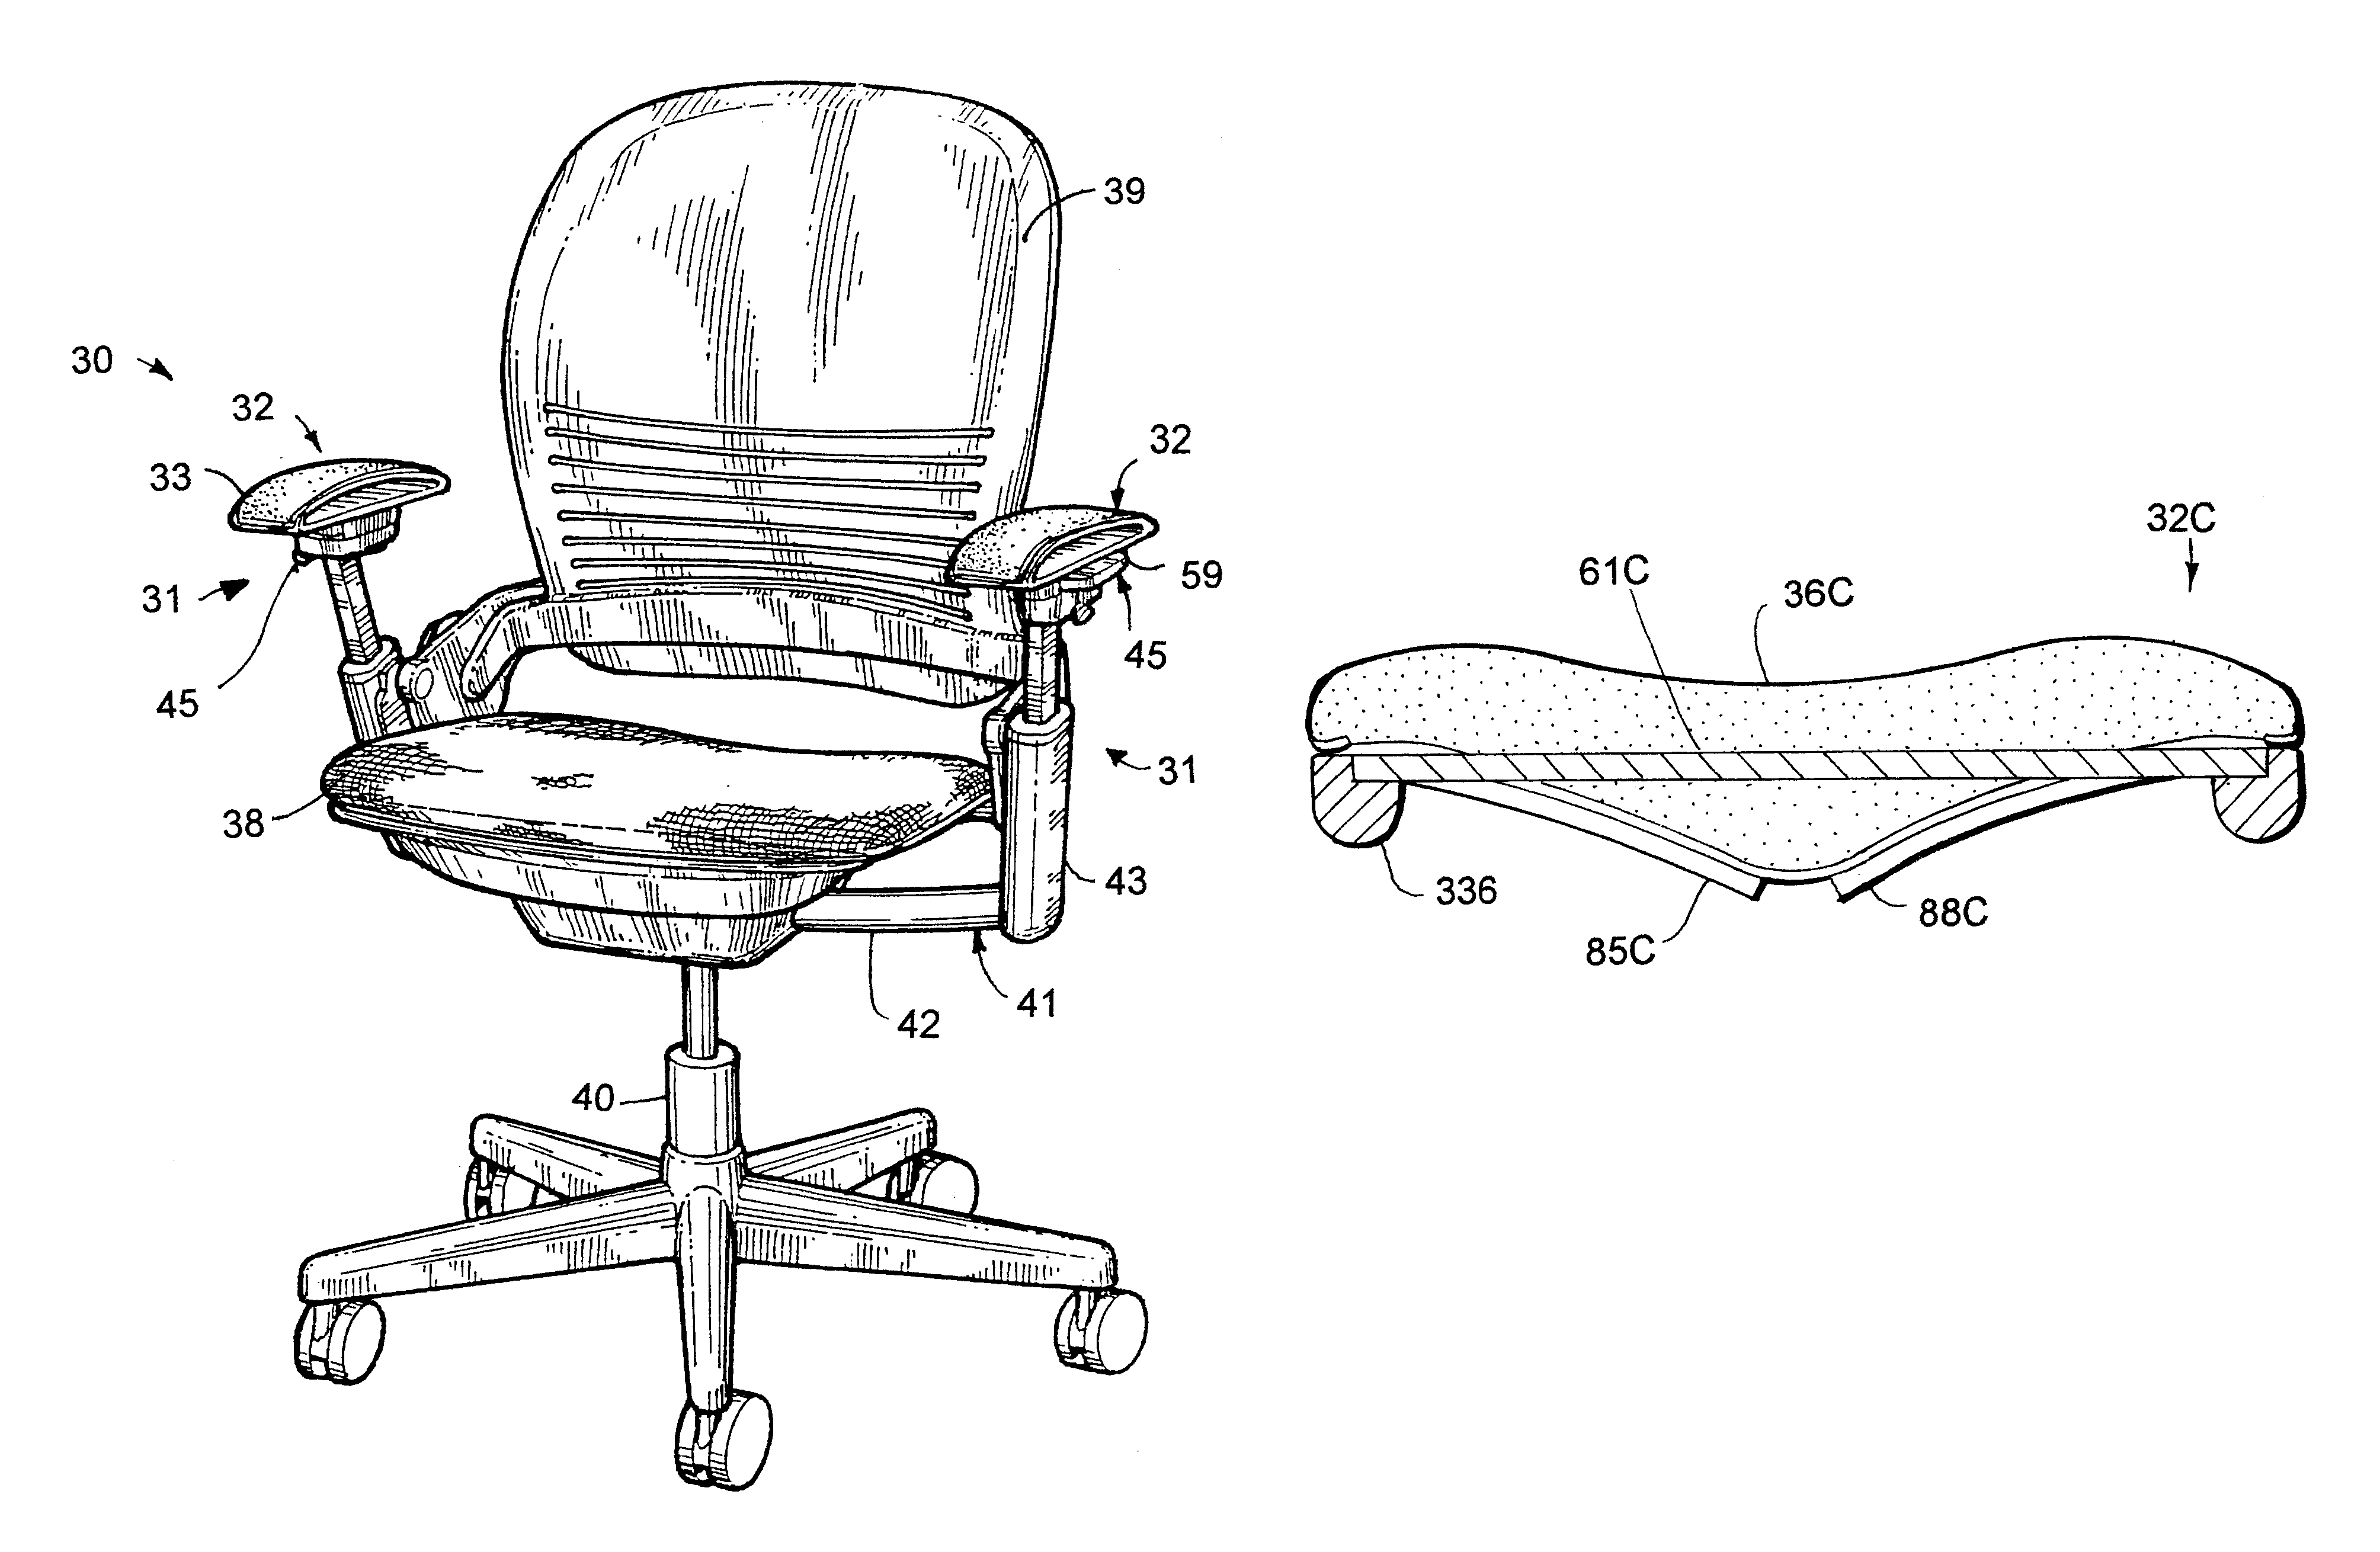 Flexible armrest construction